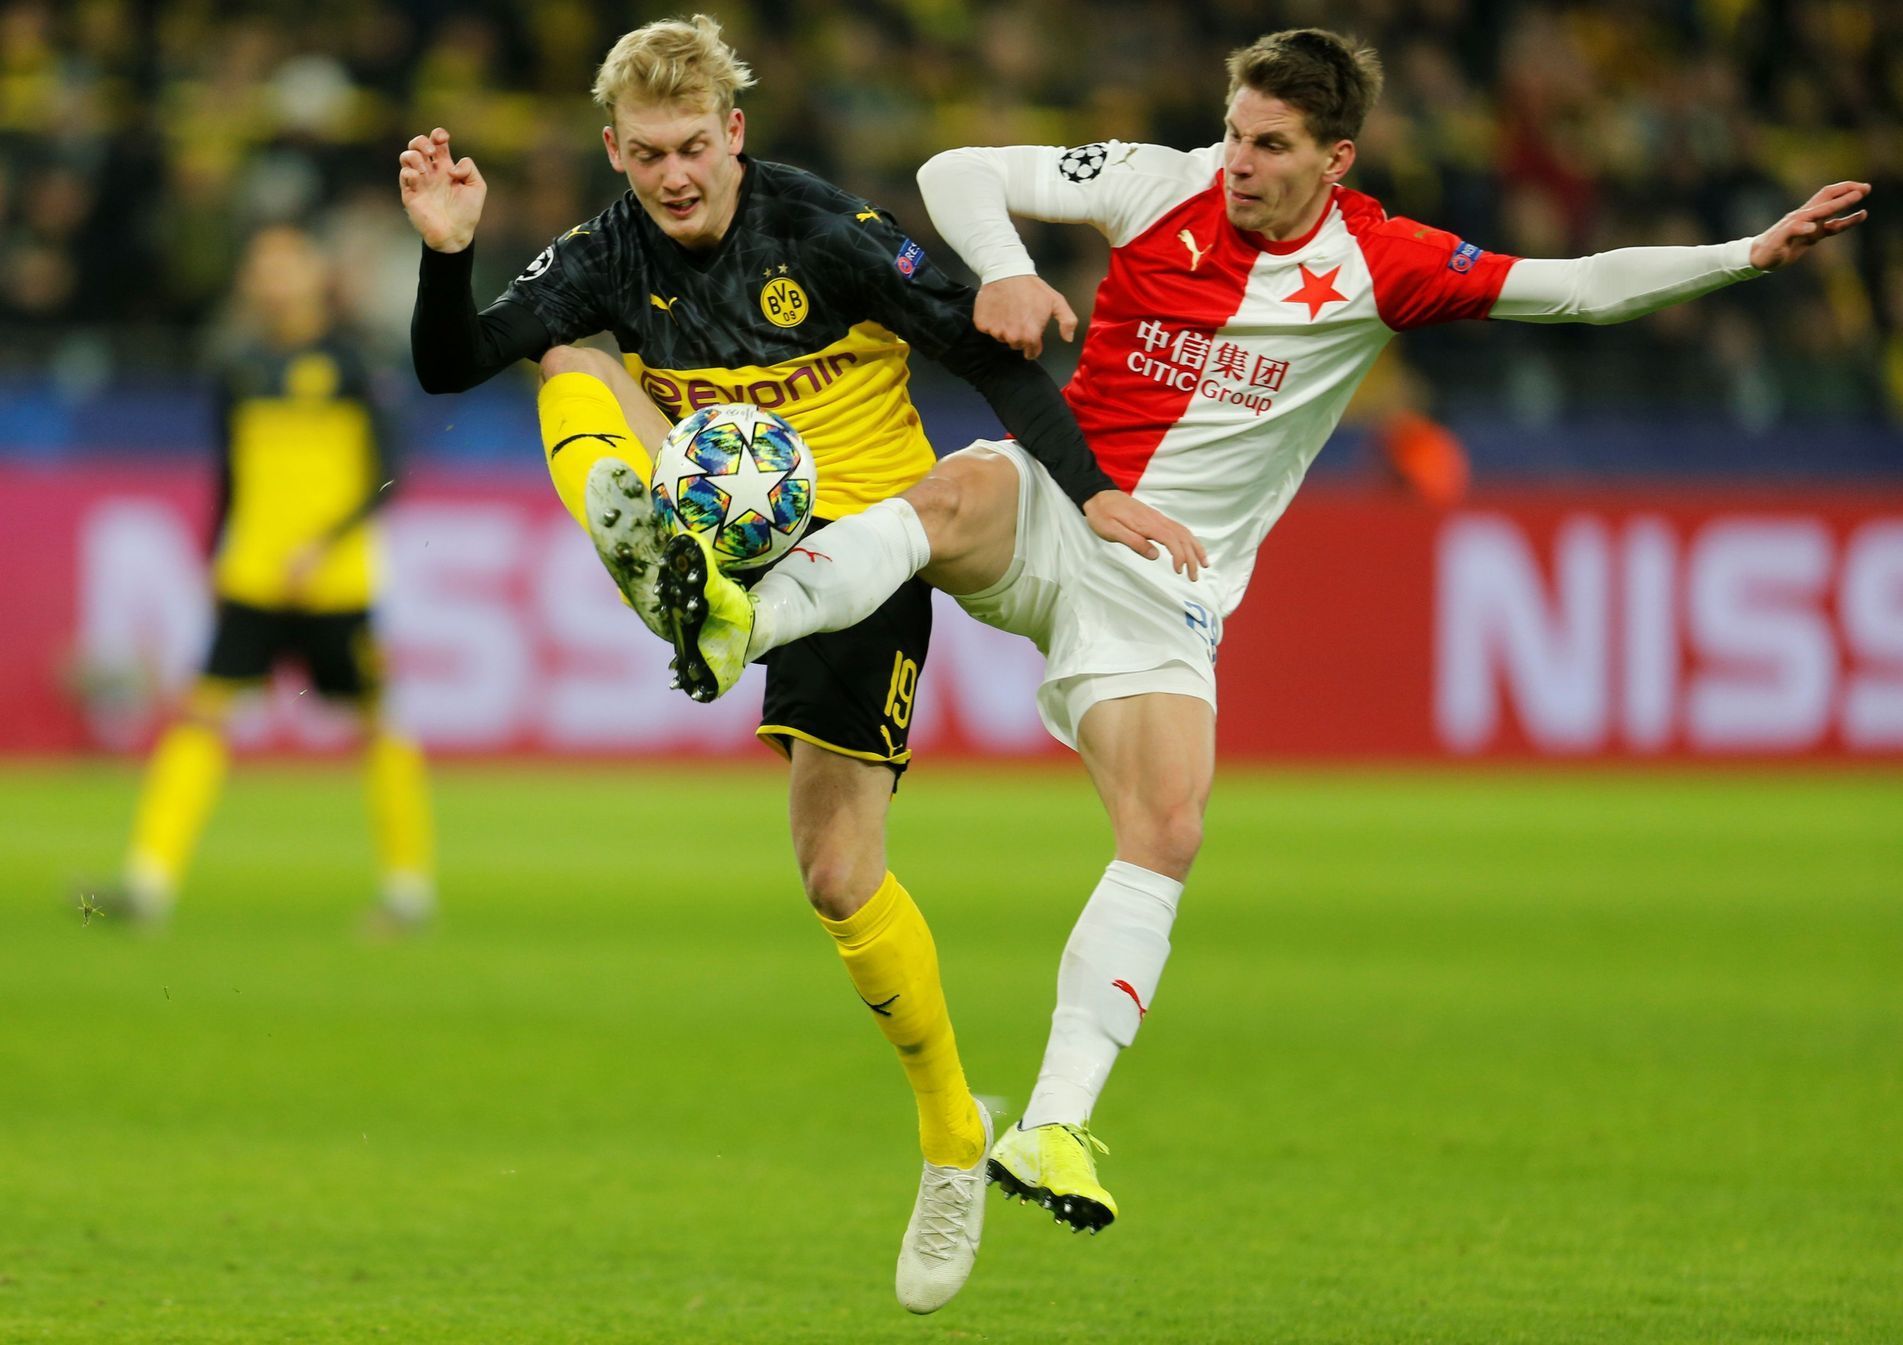 Julian Brandt a Lukáš Masopust v zápase LM Borussia Dortmund - Slavia